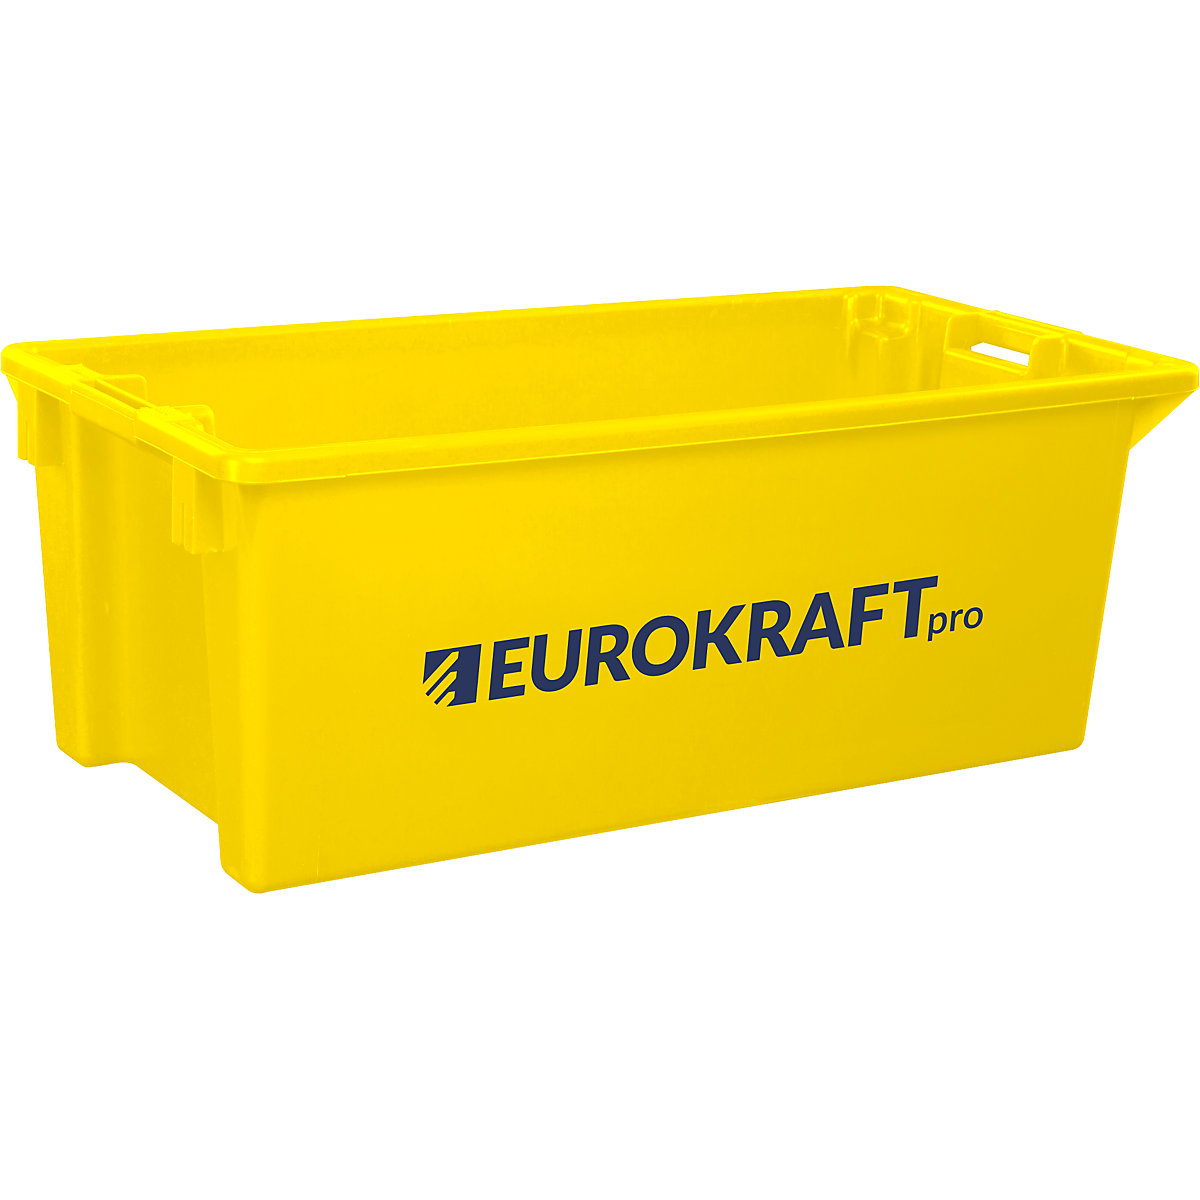 EUROKRAFTpro – Zasučna posoda za zlaganje iz polipropilena, primernega za živila, prostornina 13 l, DE 4 kosi, stene in dno zaprti, rumena